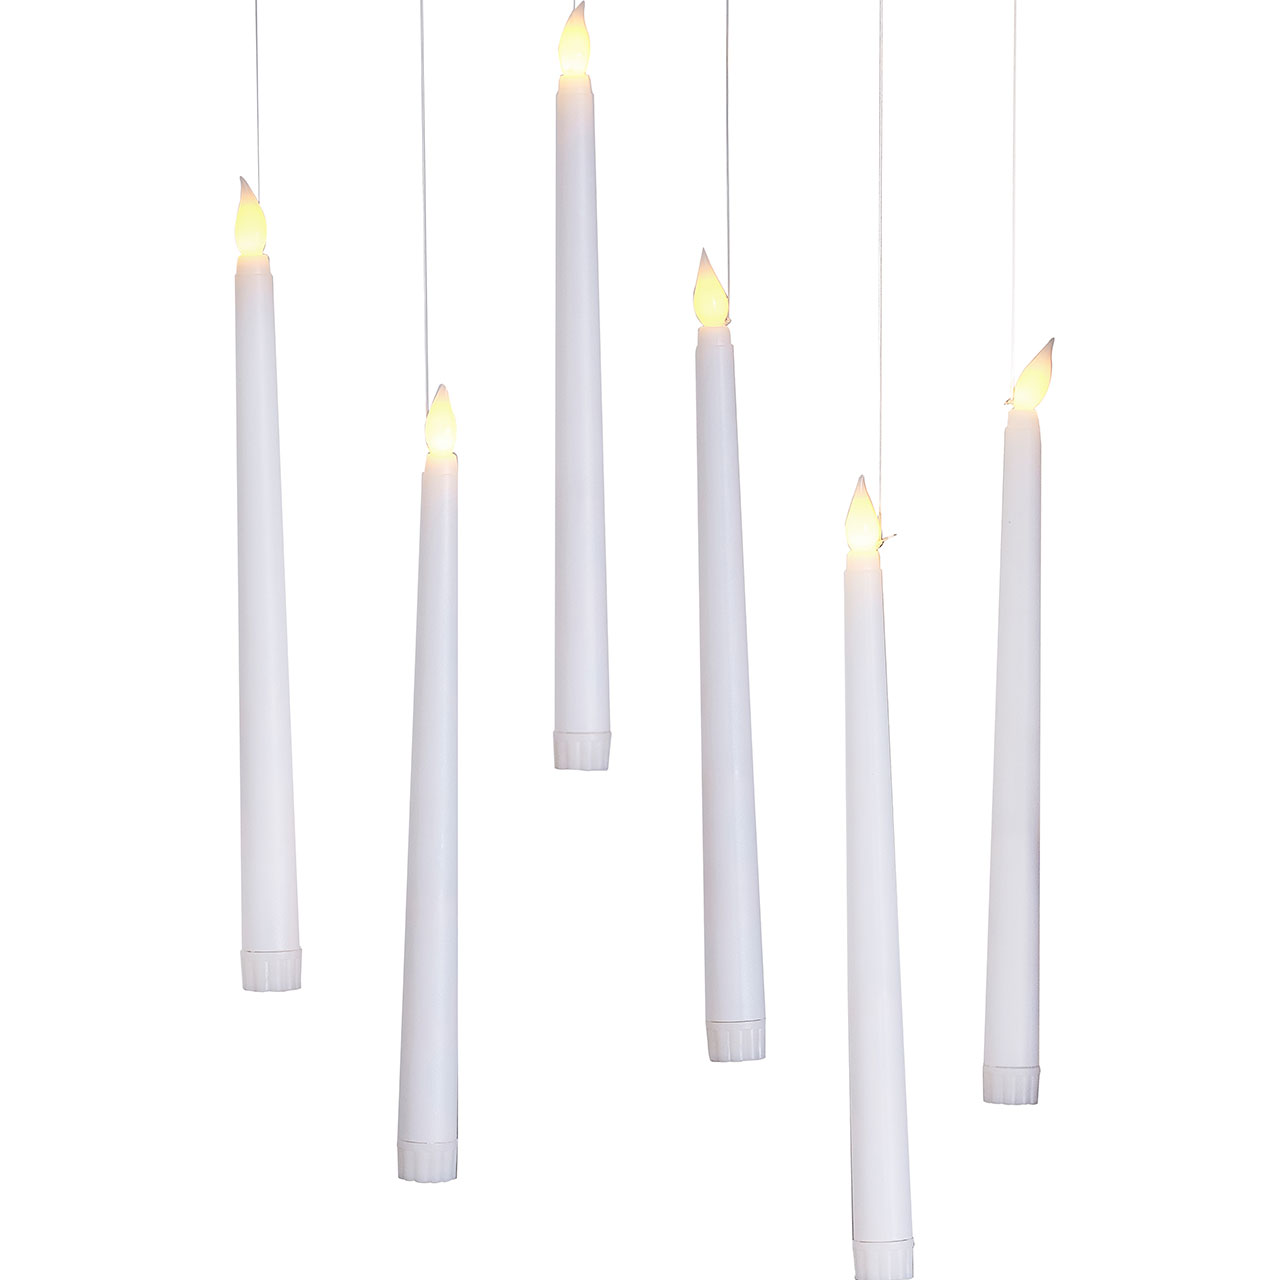 Floating LED Candles